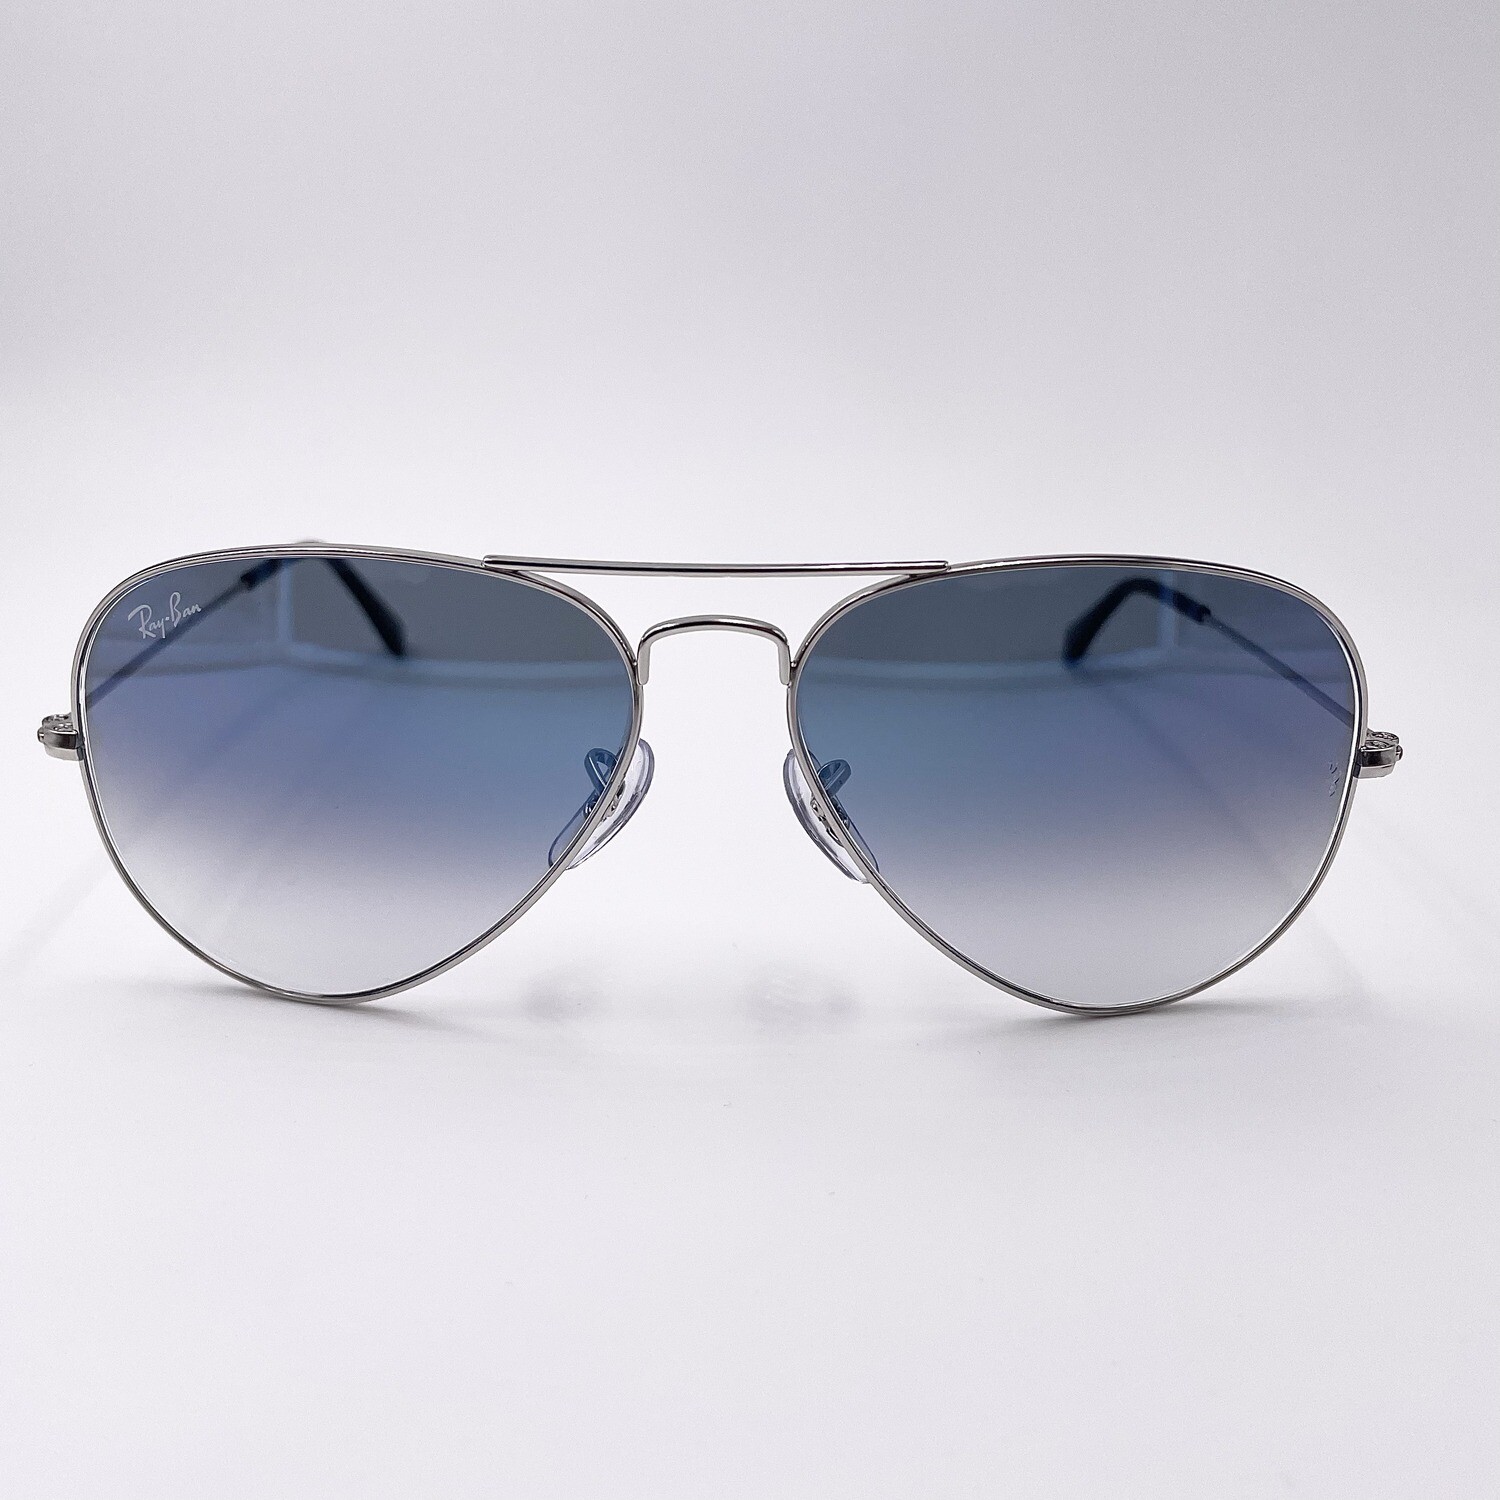 Ray Ban - Aviator Large Metal occhiale da sole in metallo RB 3025